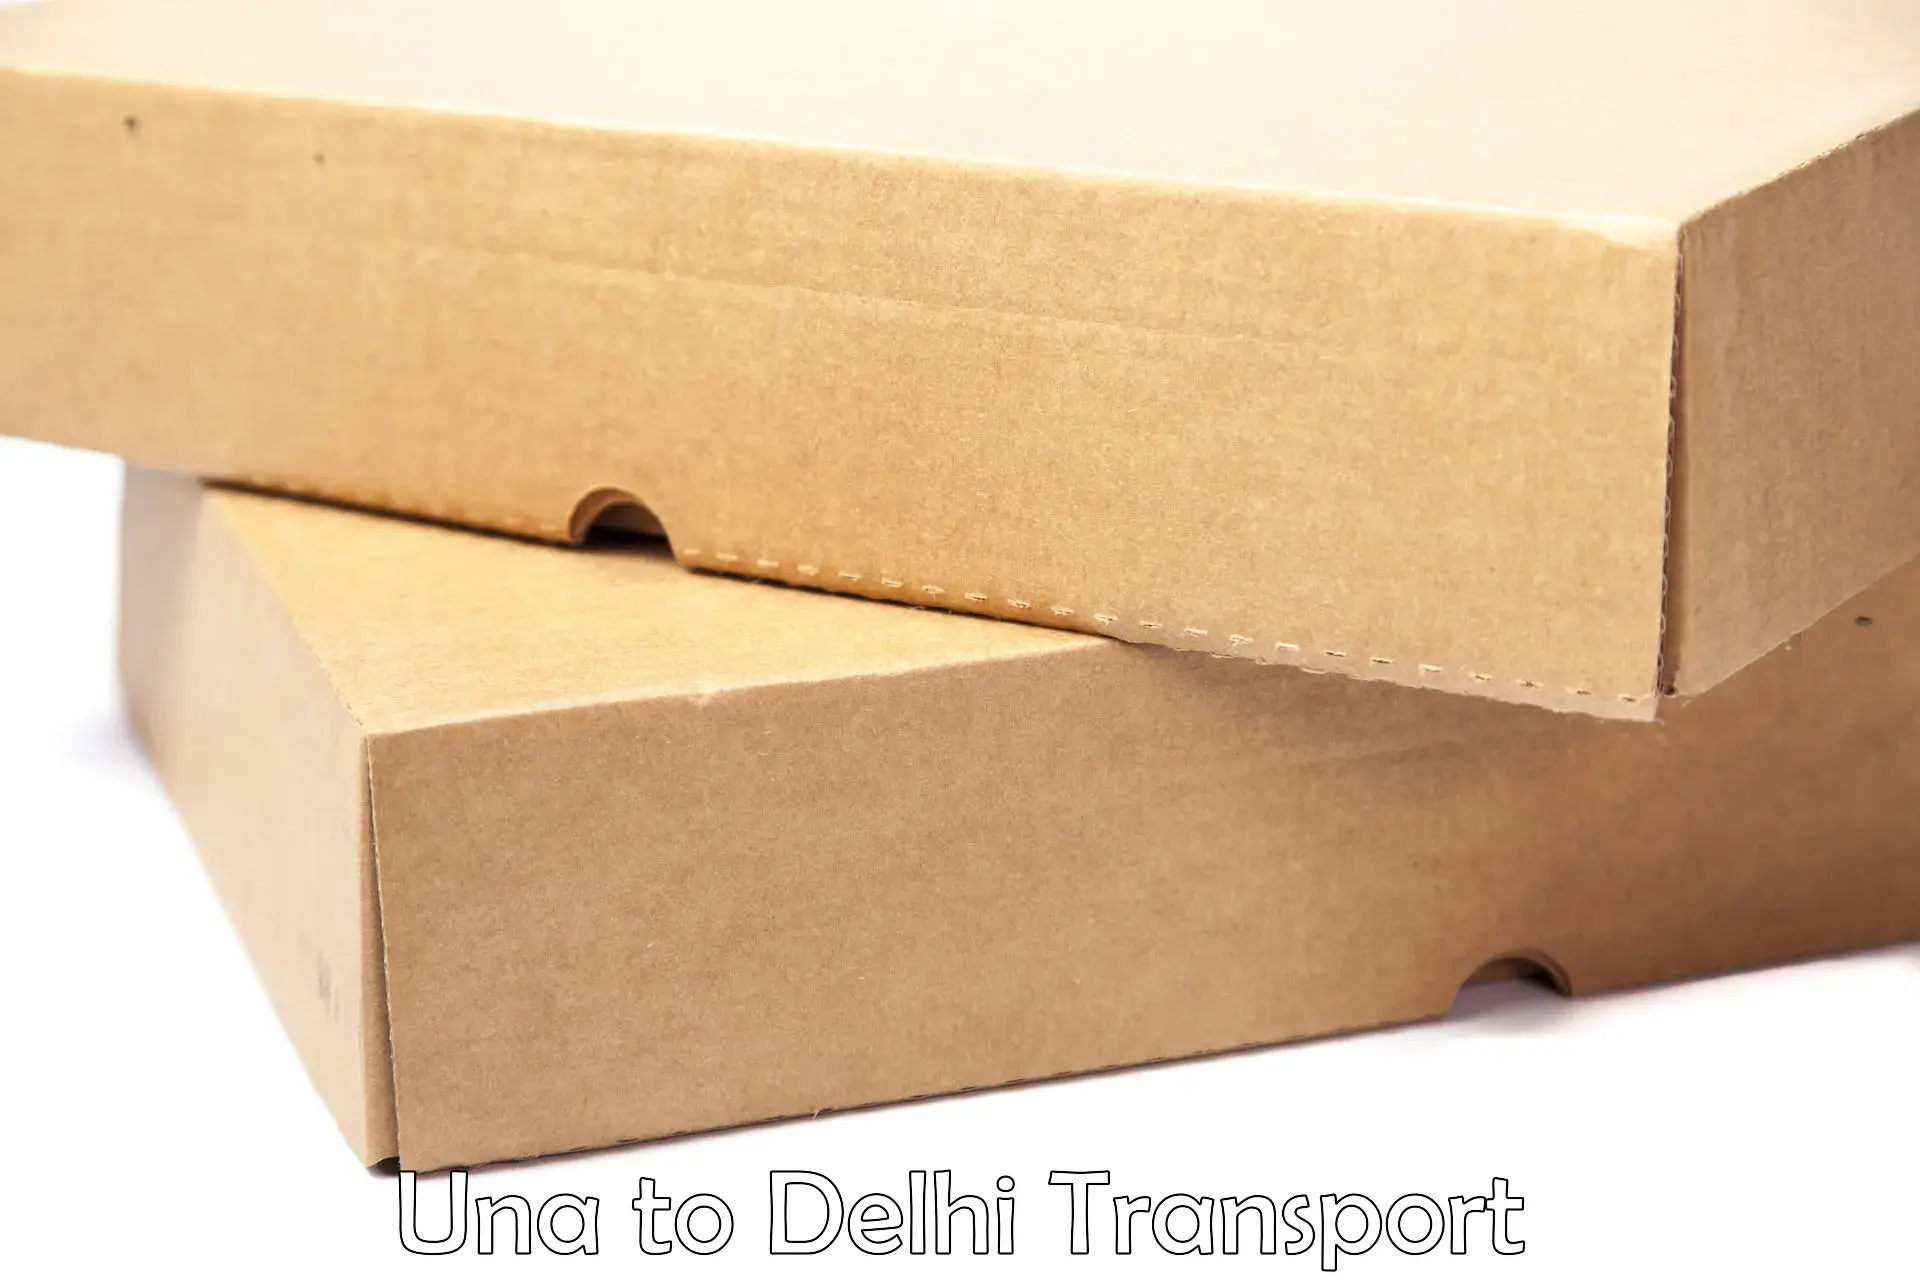 Pick up transport service Una to East Delhi